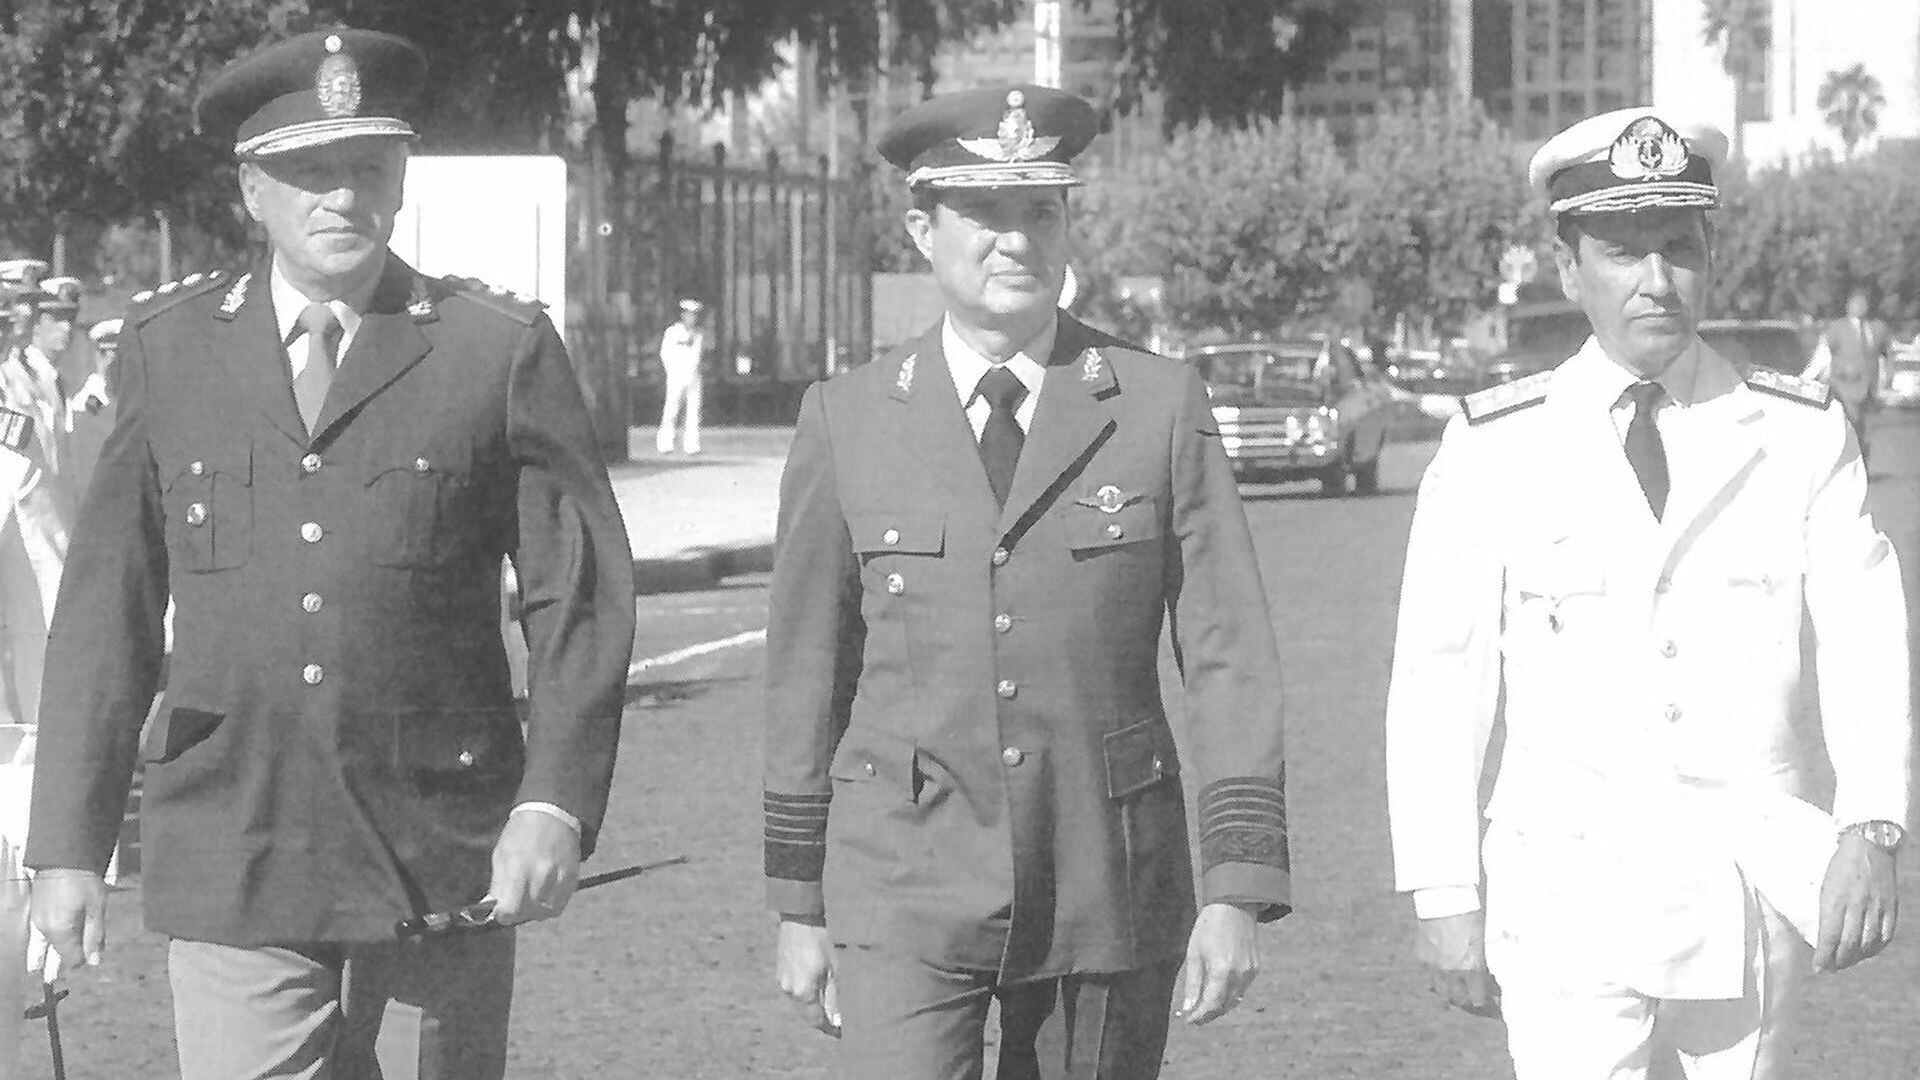 La junta militar de la dictadura durante la guerra de Malvinas: Leopoldo Fortunato Galtieri, Basiolio Lami Dozo y Jorge Isaac Anaya